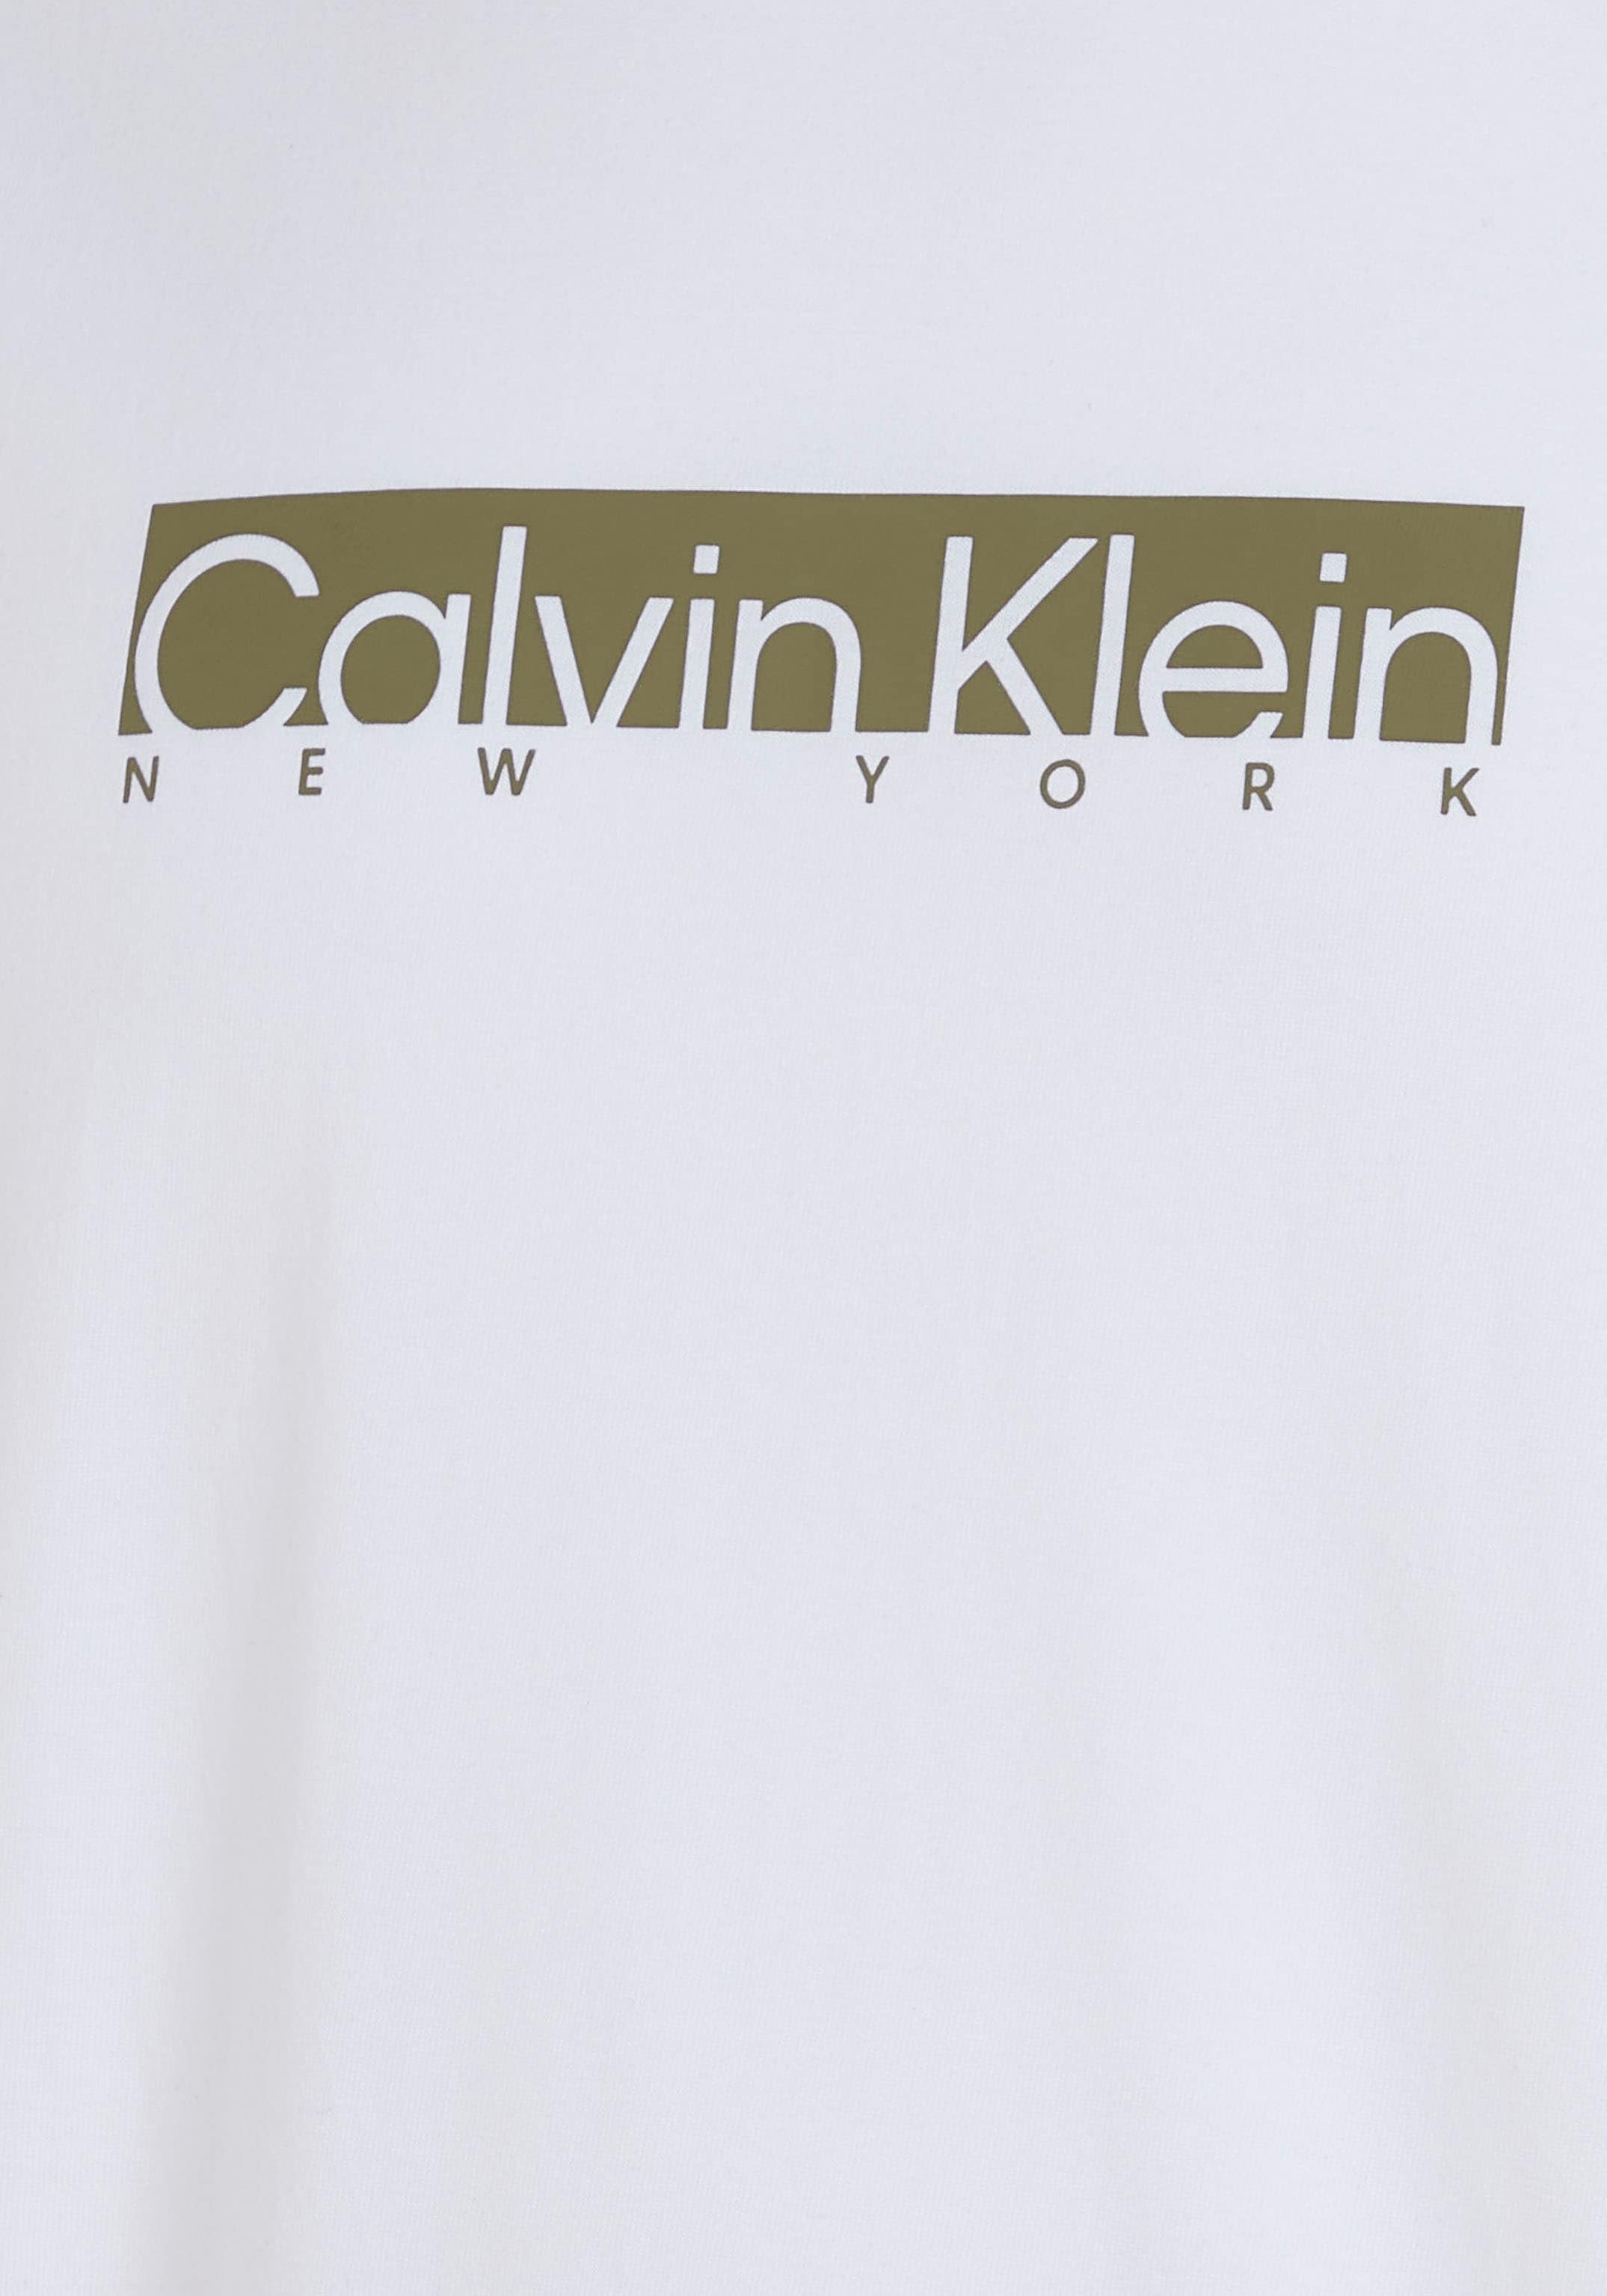 Klein mit Kurzarmshirt, Klein auf Logo kaufen ▷ Brust | BAUR Calvin der Calvin